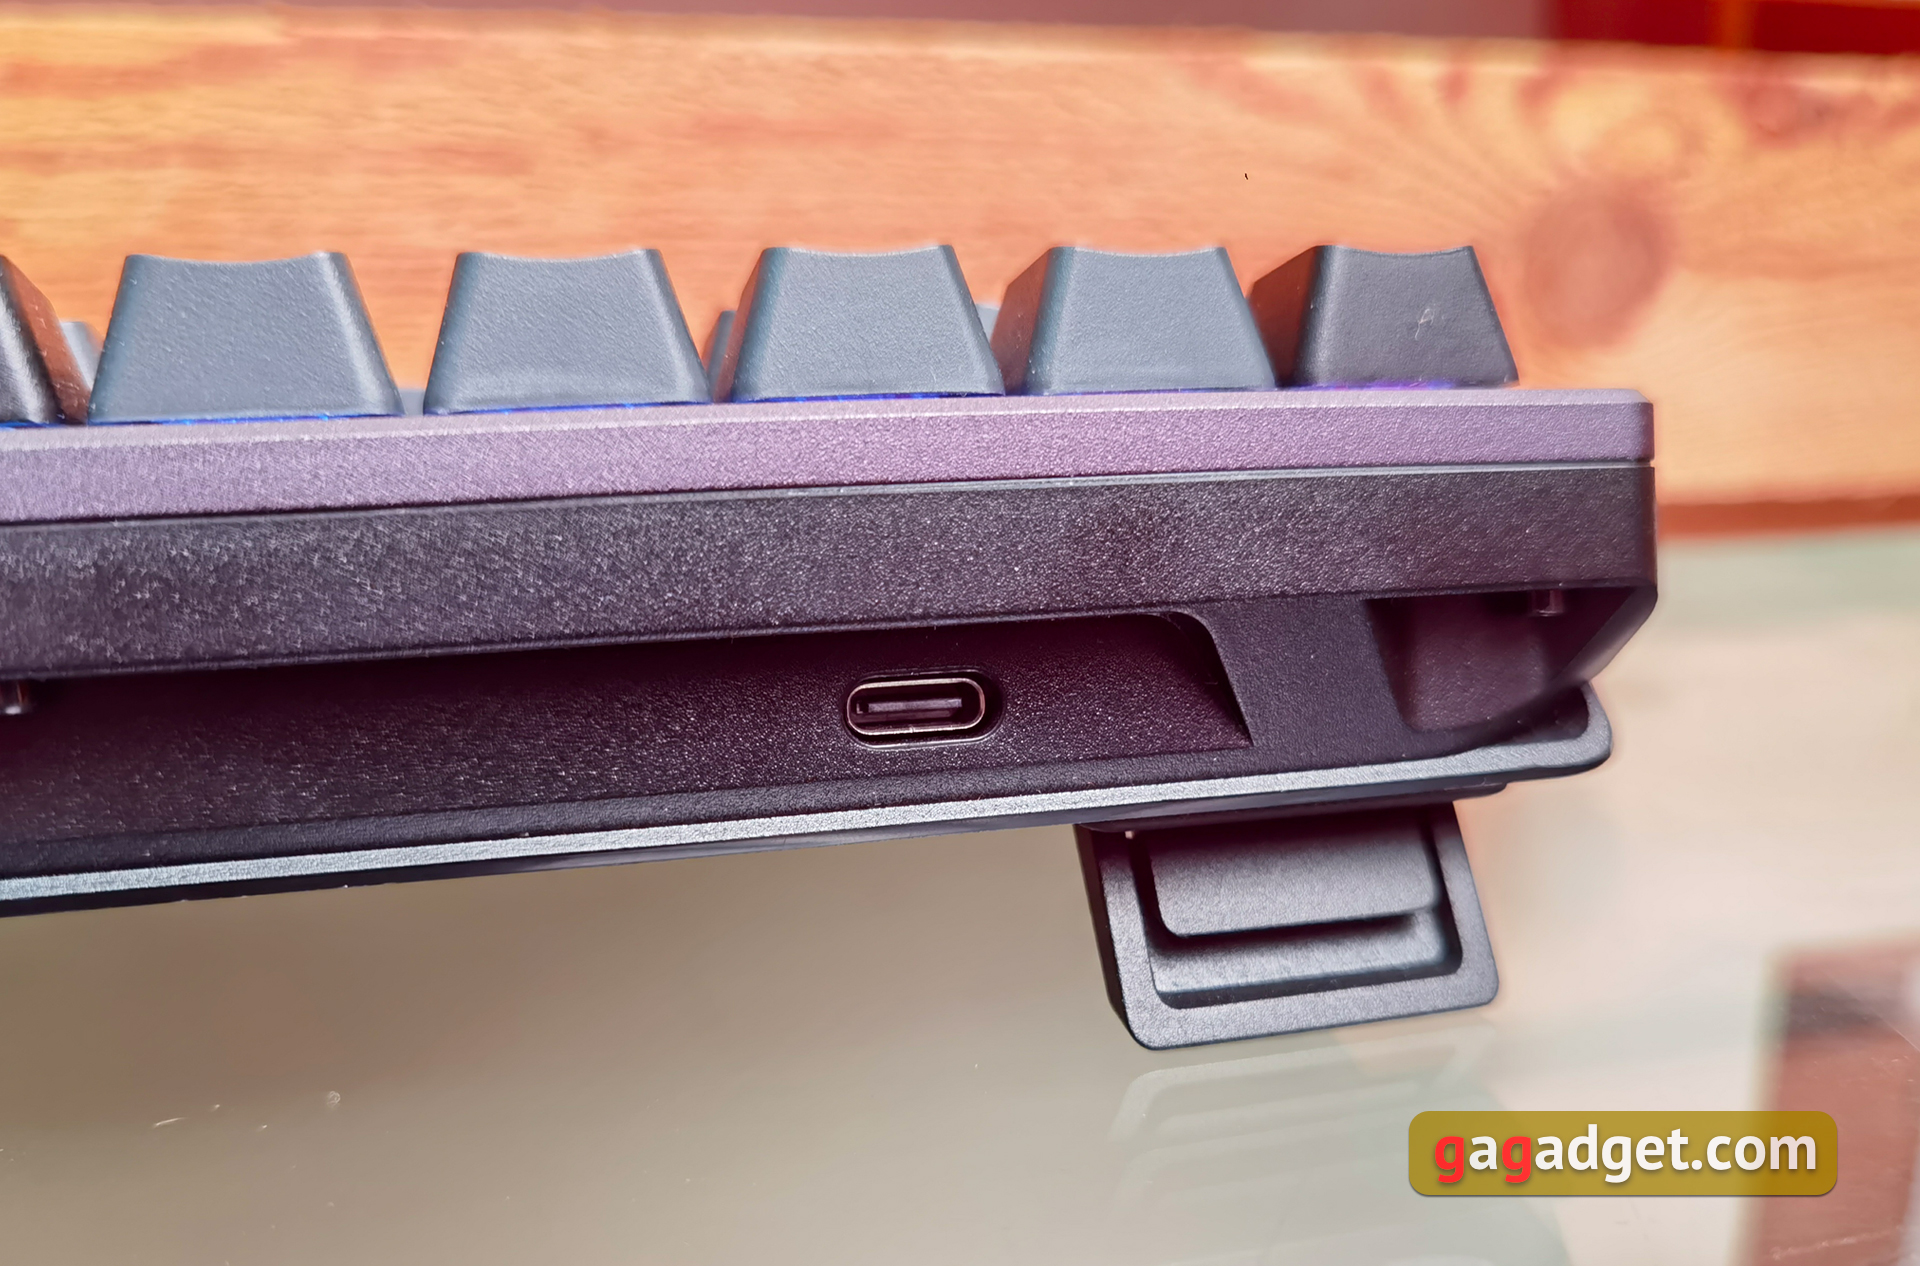 ASUS ROG Azoth-anmeldelse: det kompromissløse mekaniske tastaturet for gamere som du aldri hadde forventet deg-19